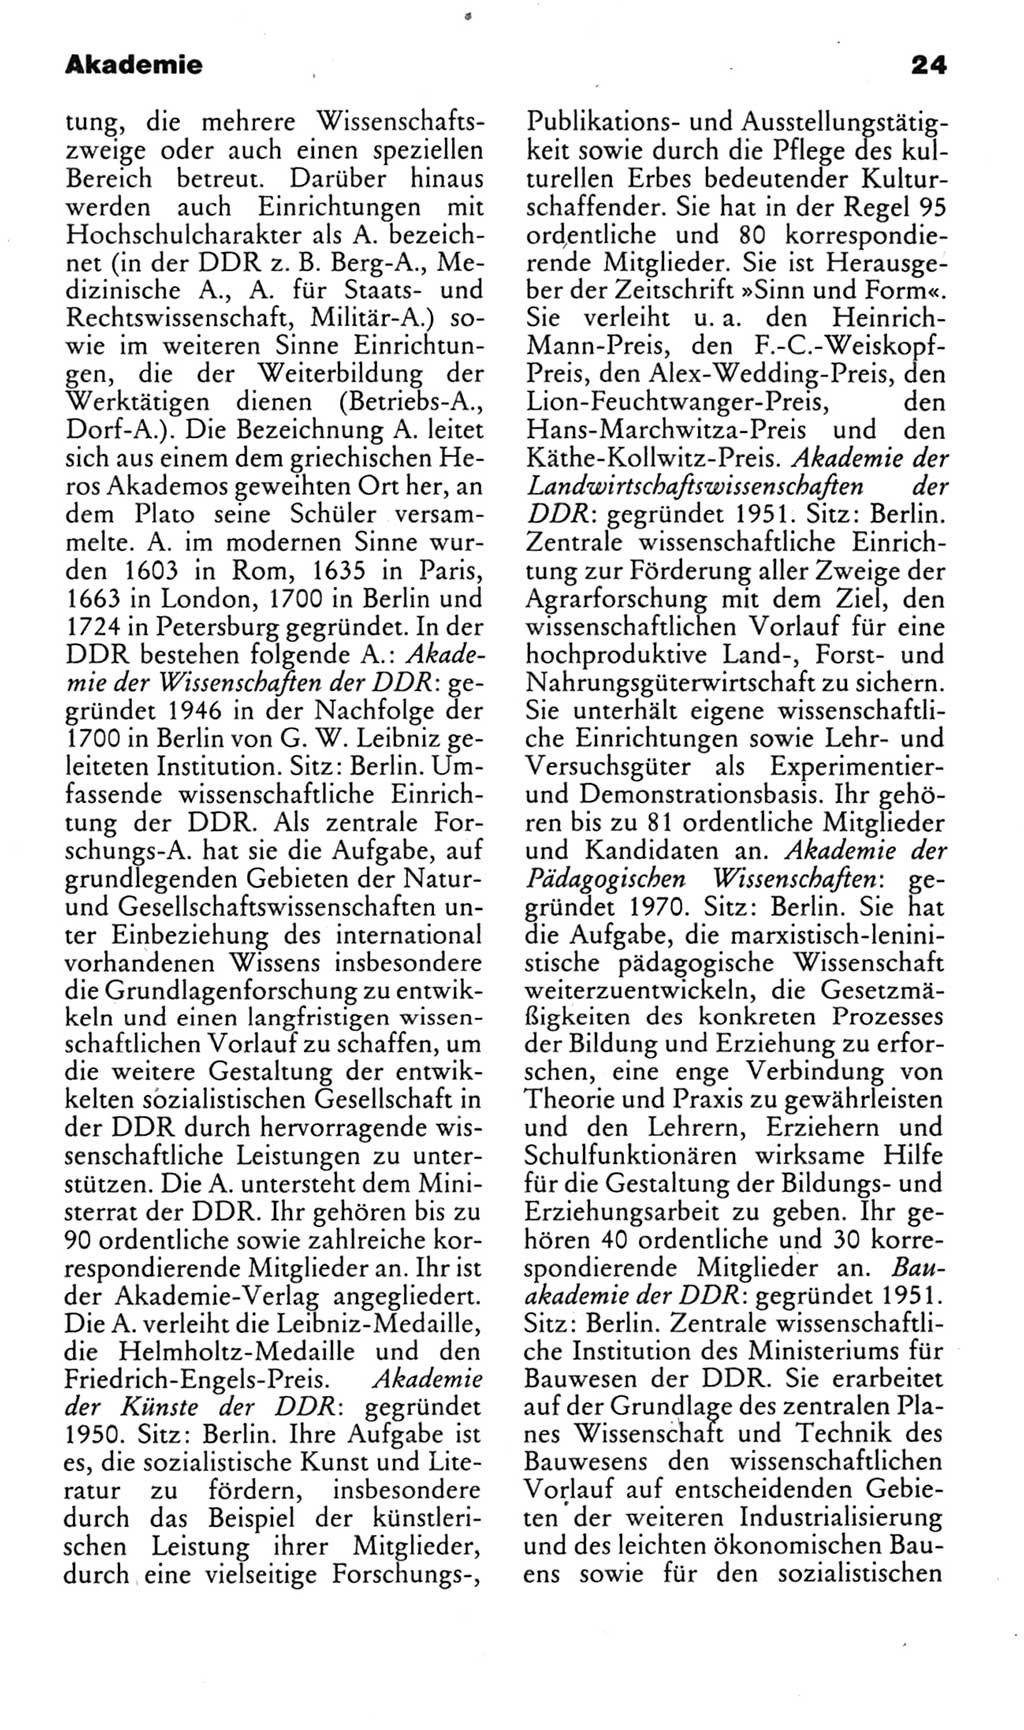 Kleines politisches Wörterbuch [Deutsche Demokratische Republik (DDR)] 1983, Seite 24 (Kl. pol. Wb. DDR 1983, S. 24)